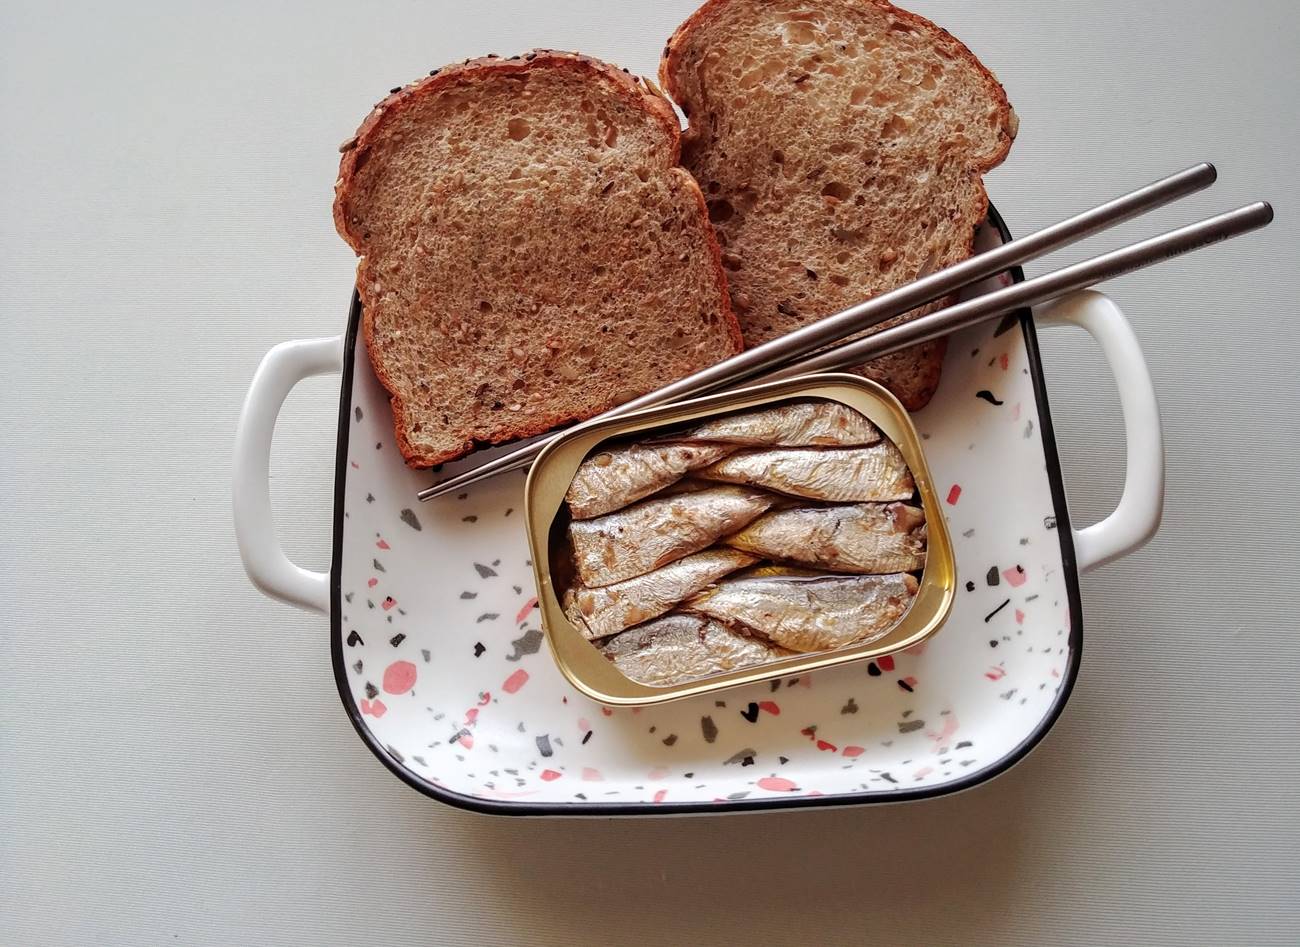 Tri iznenađujuće zdravstvene koristi od sardina